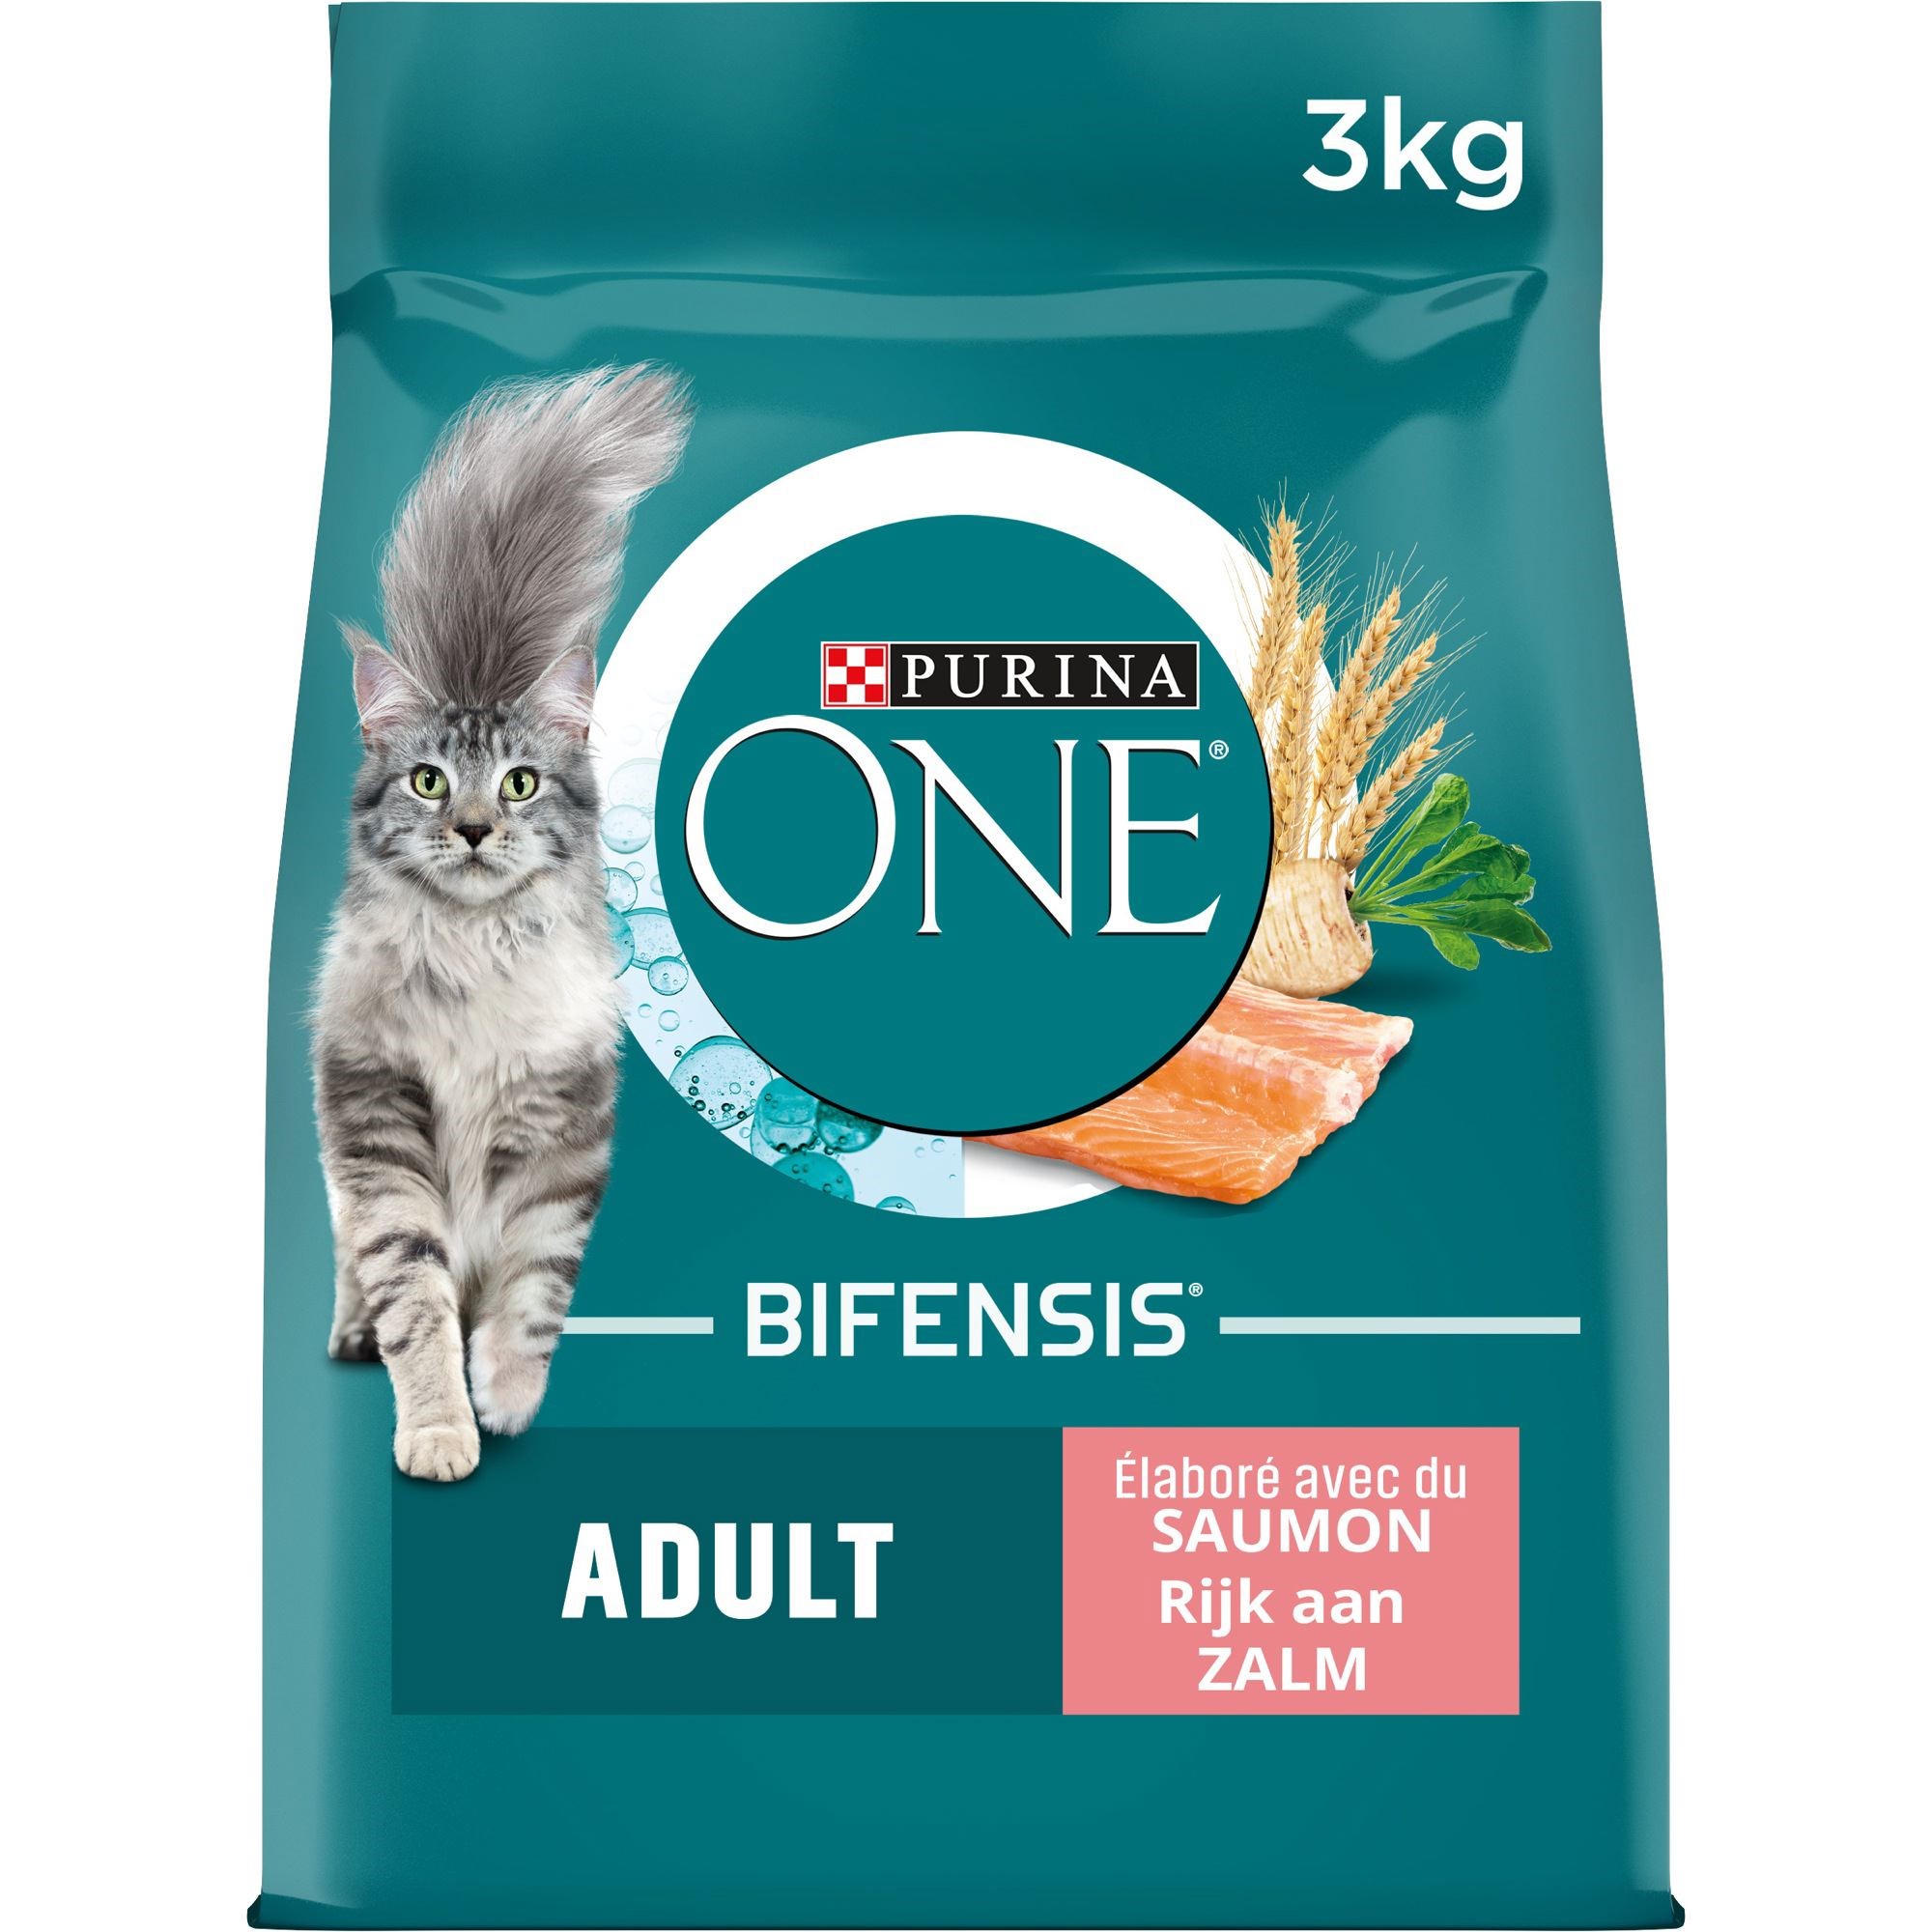 Purina One Bifensis® Adult Saumon Et Céréales Complètes  3Kg